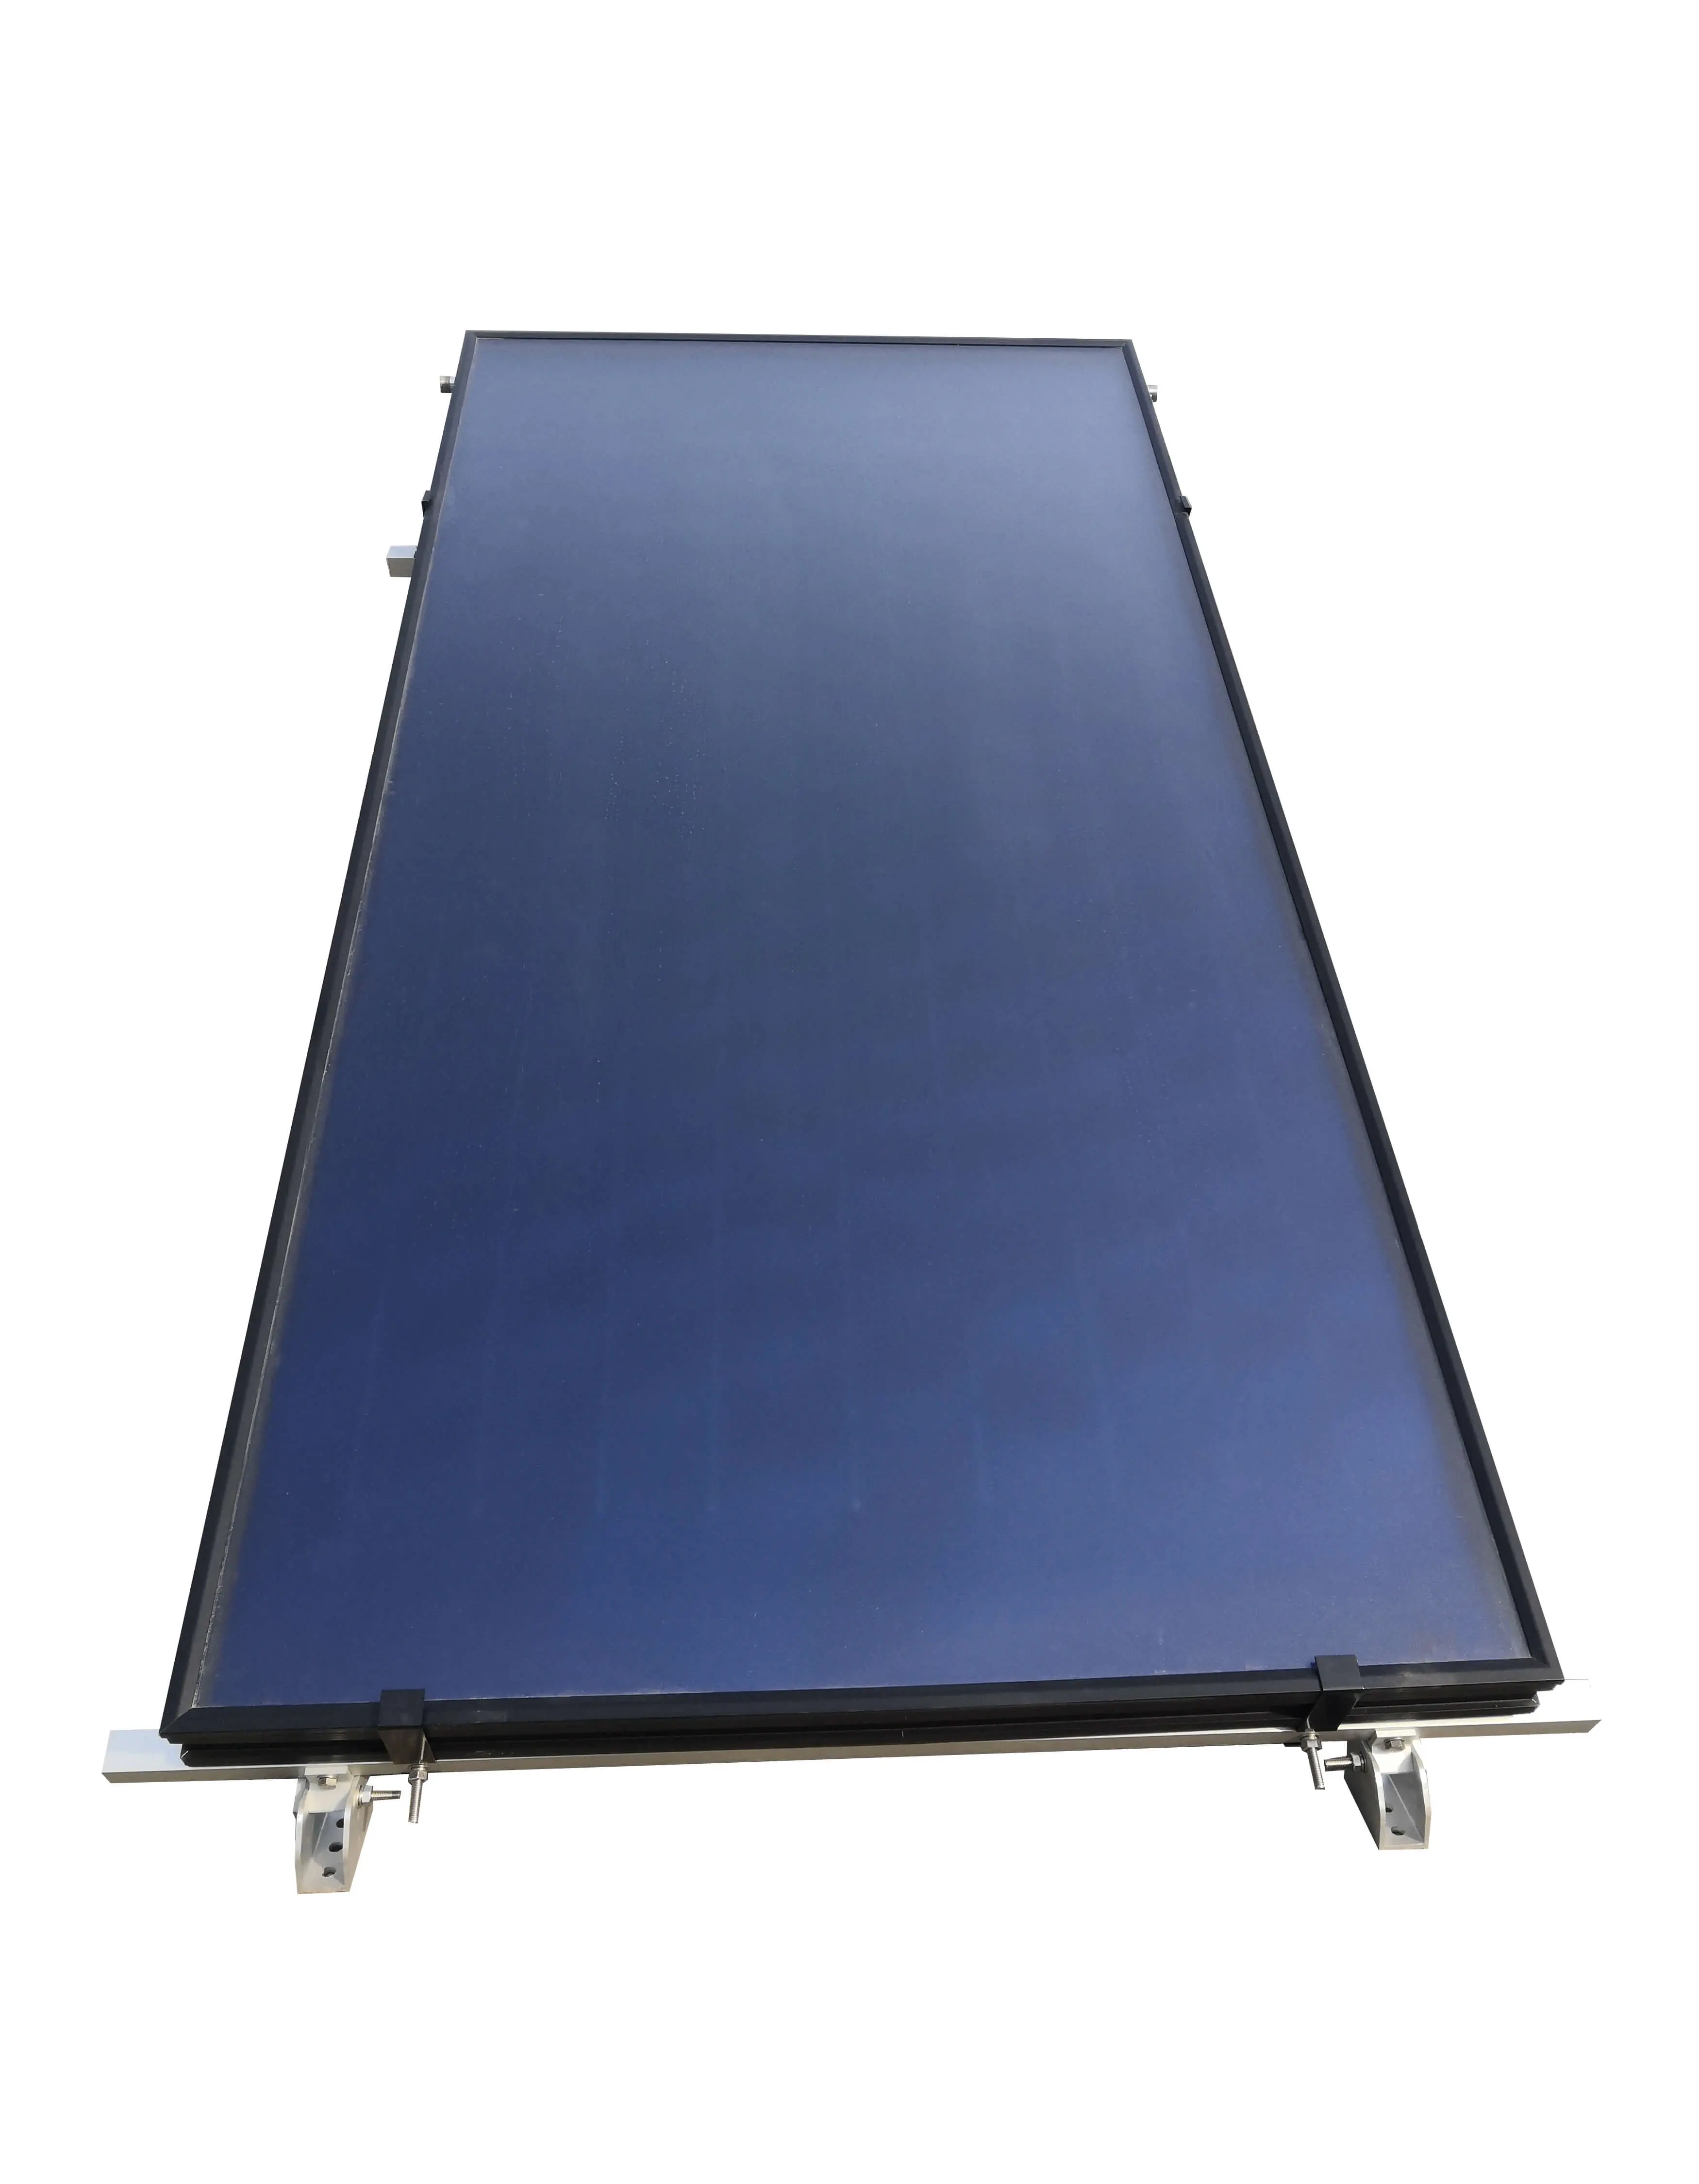 Kolektor tenaga surya pelat datar tembaga material pipa UNP-FP02 untuk produk pemanas udara